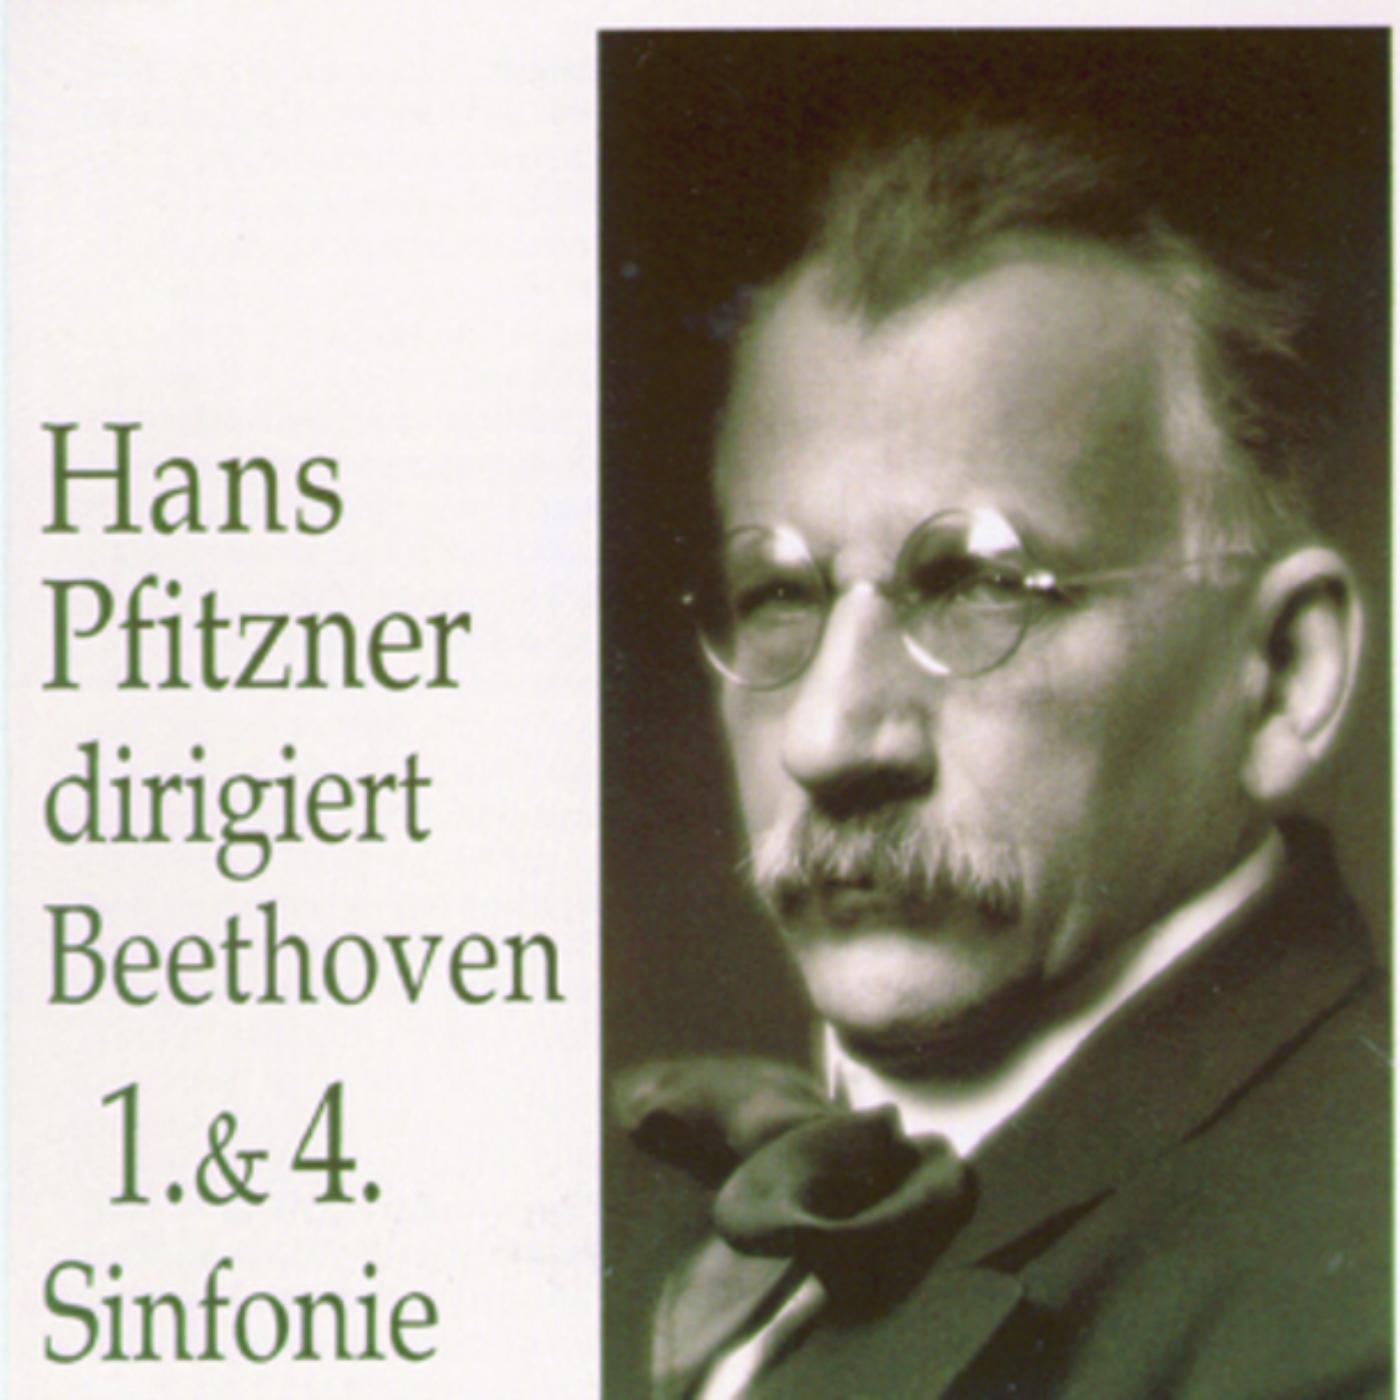 Hans Pfitzner dirigiert Beethoven 1. & 4. Sinfonie